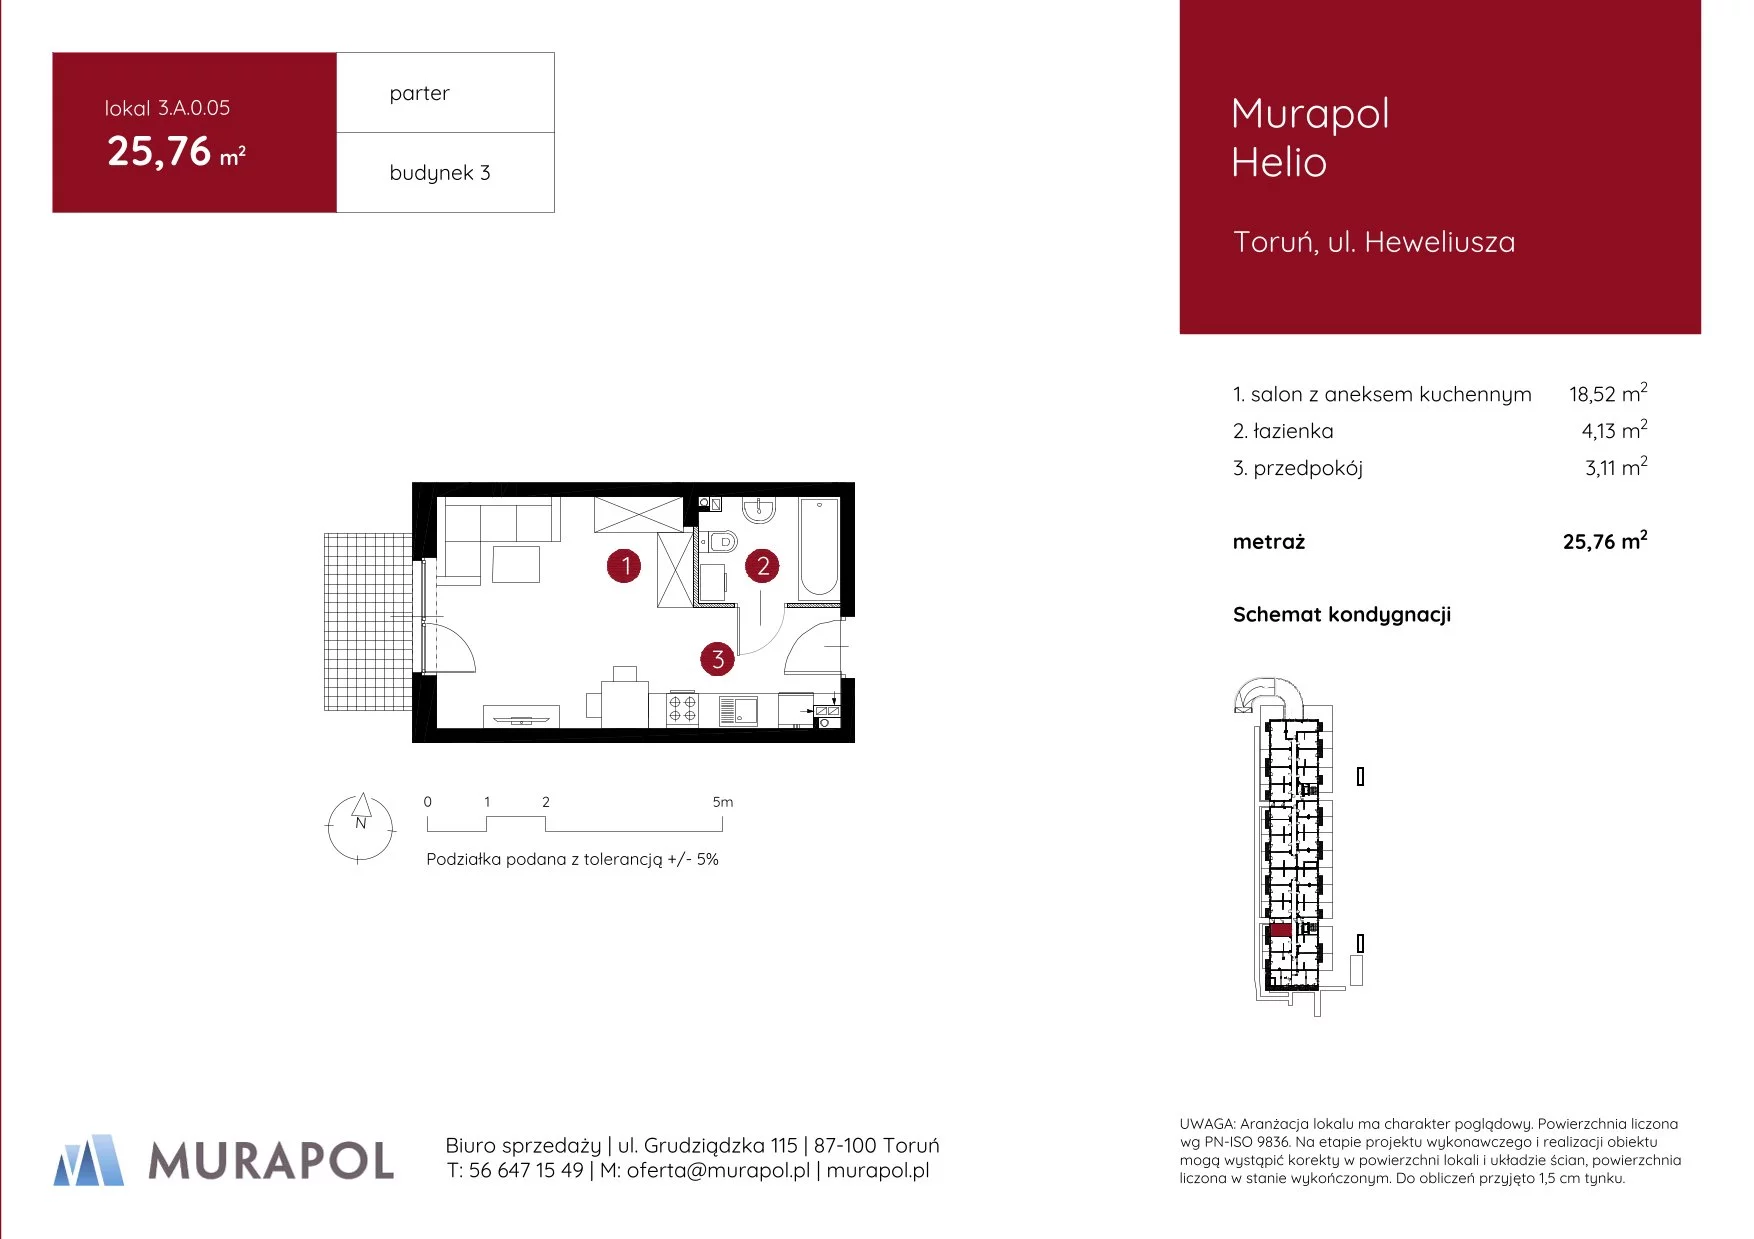 Mieszkanie 25,76 m², parter, oferta nr 3.A.0.05, Murapol Helio, Toruń, Wrzosy, JAR, ul. Heweliusza